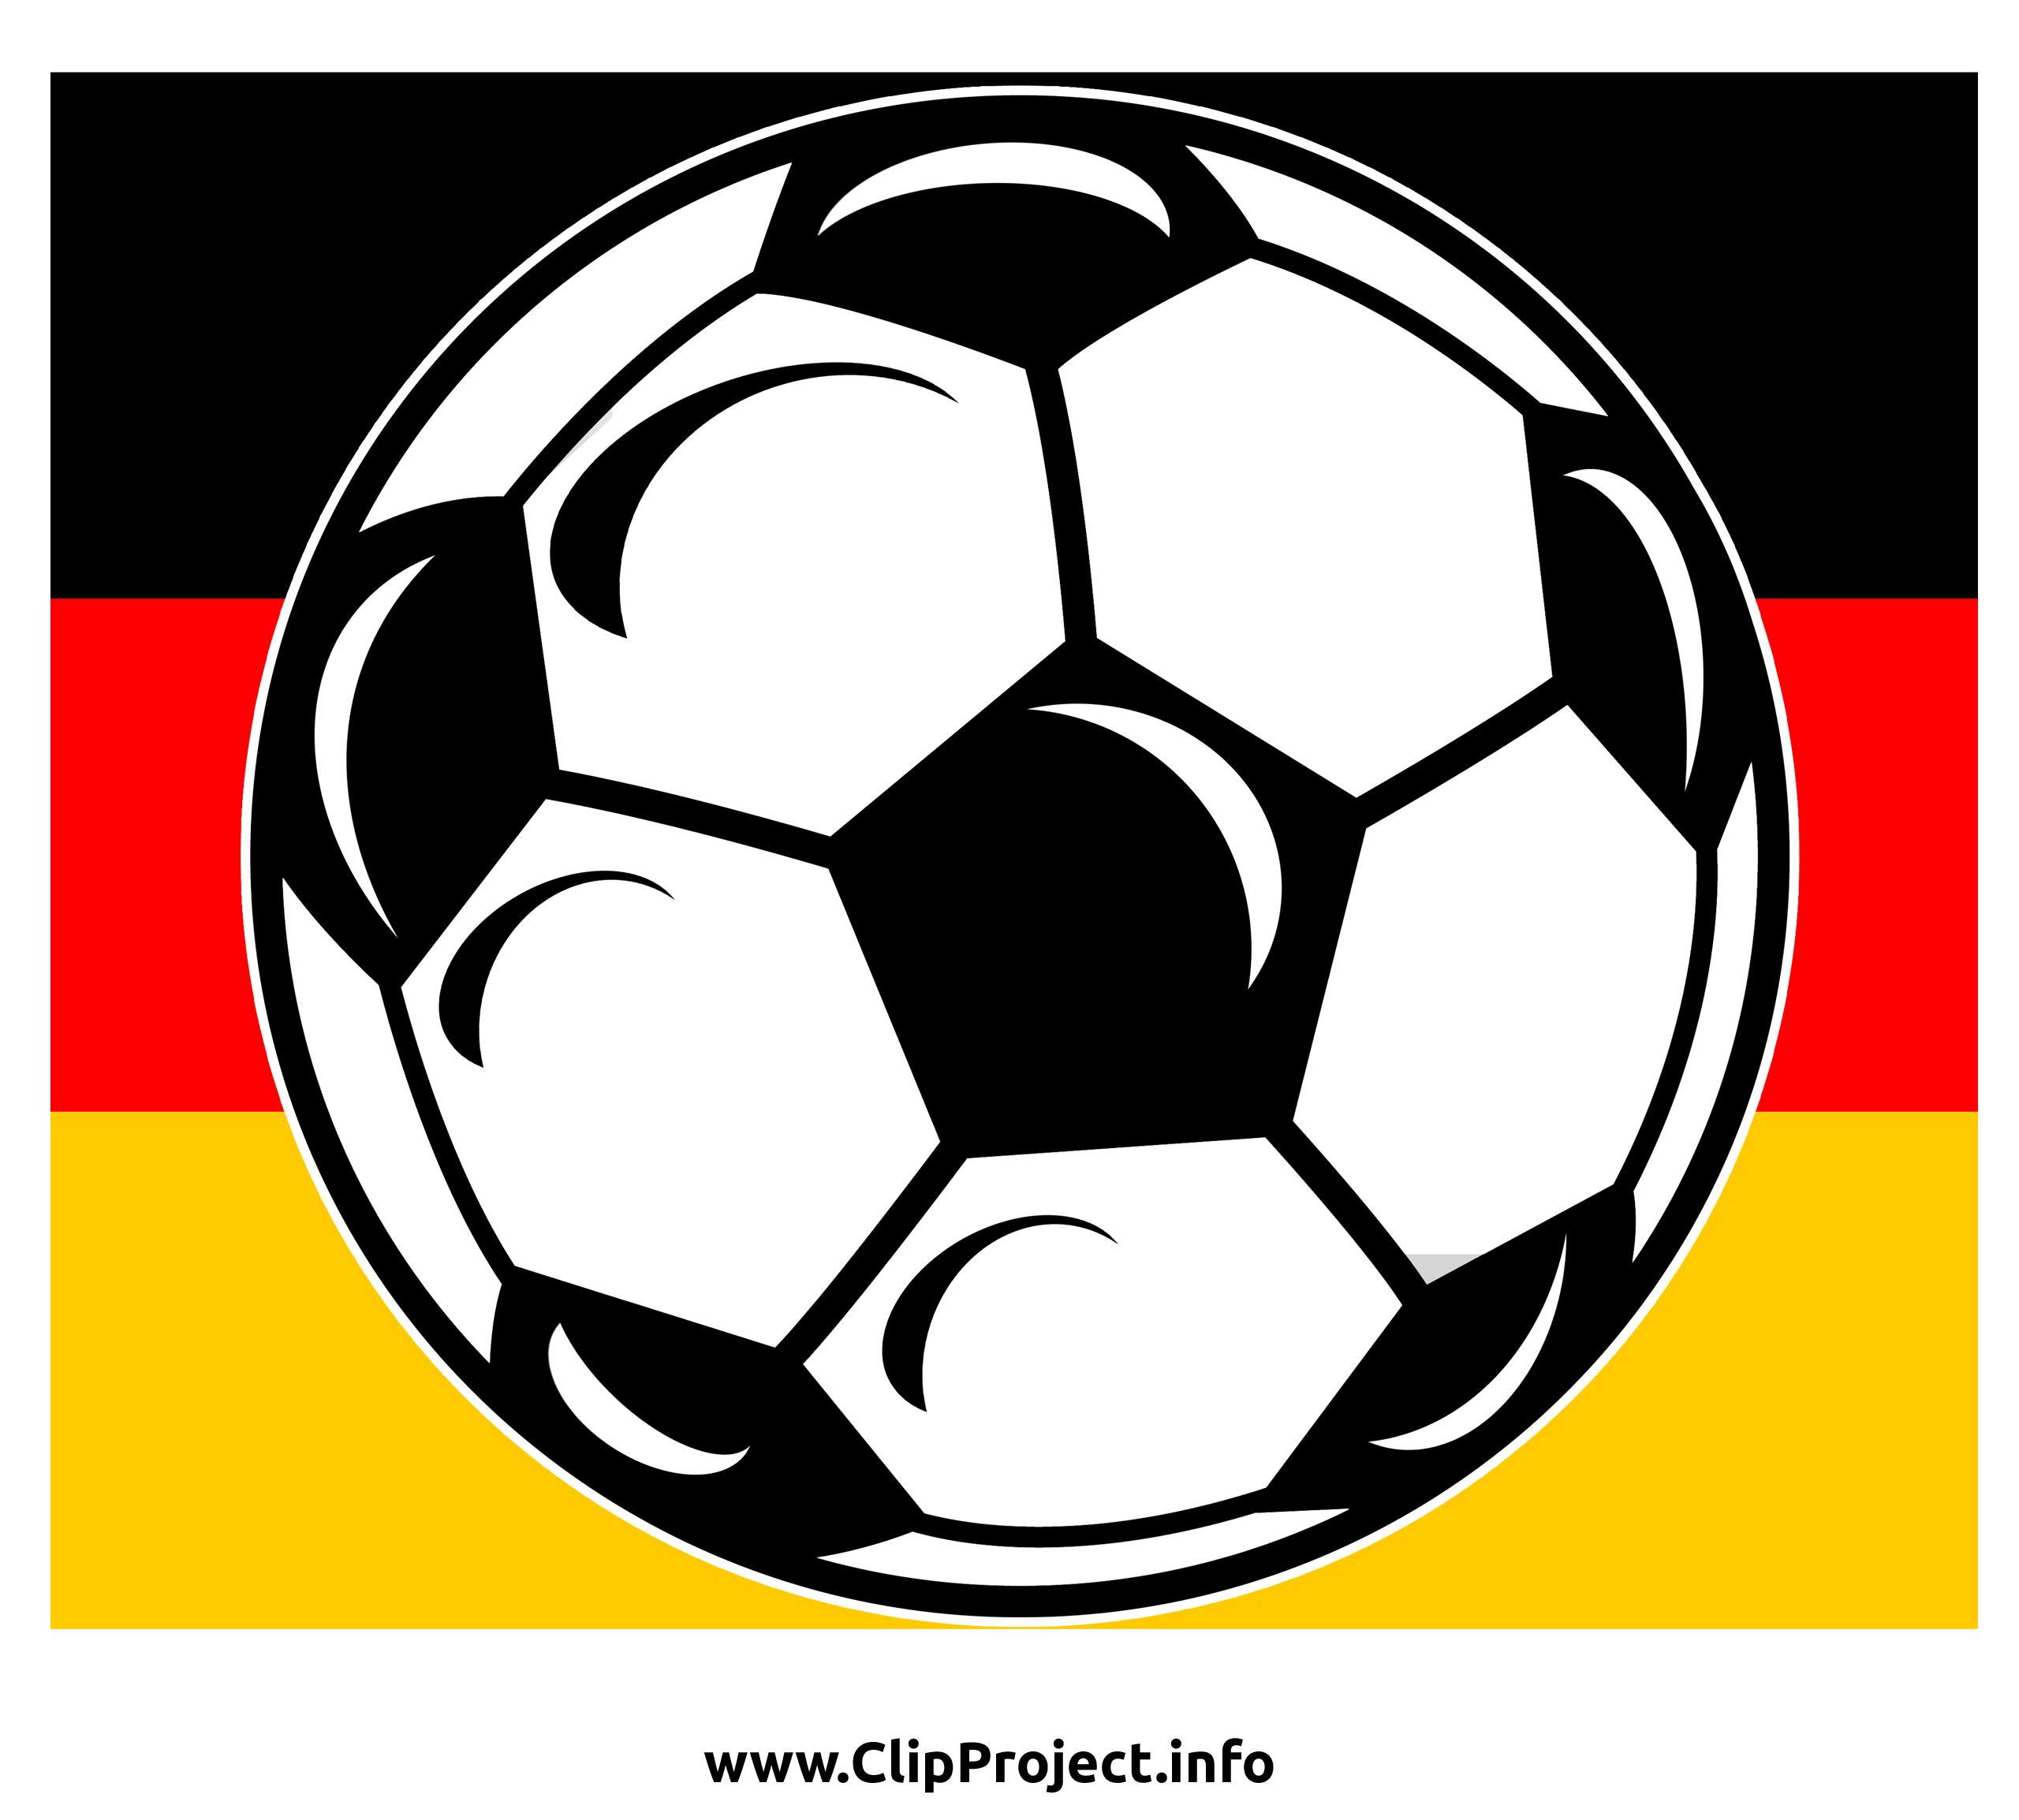 Football clip art gratuit - Allemagne images